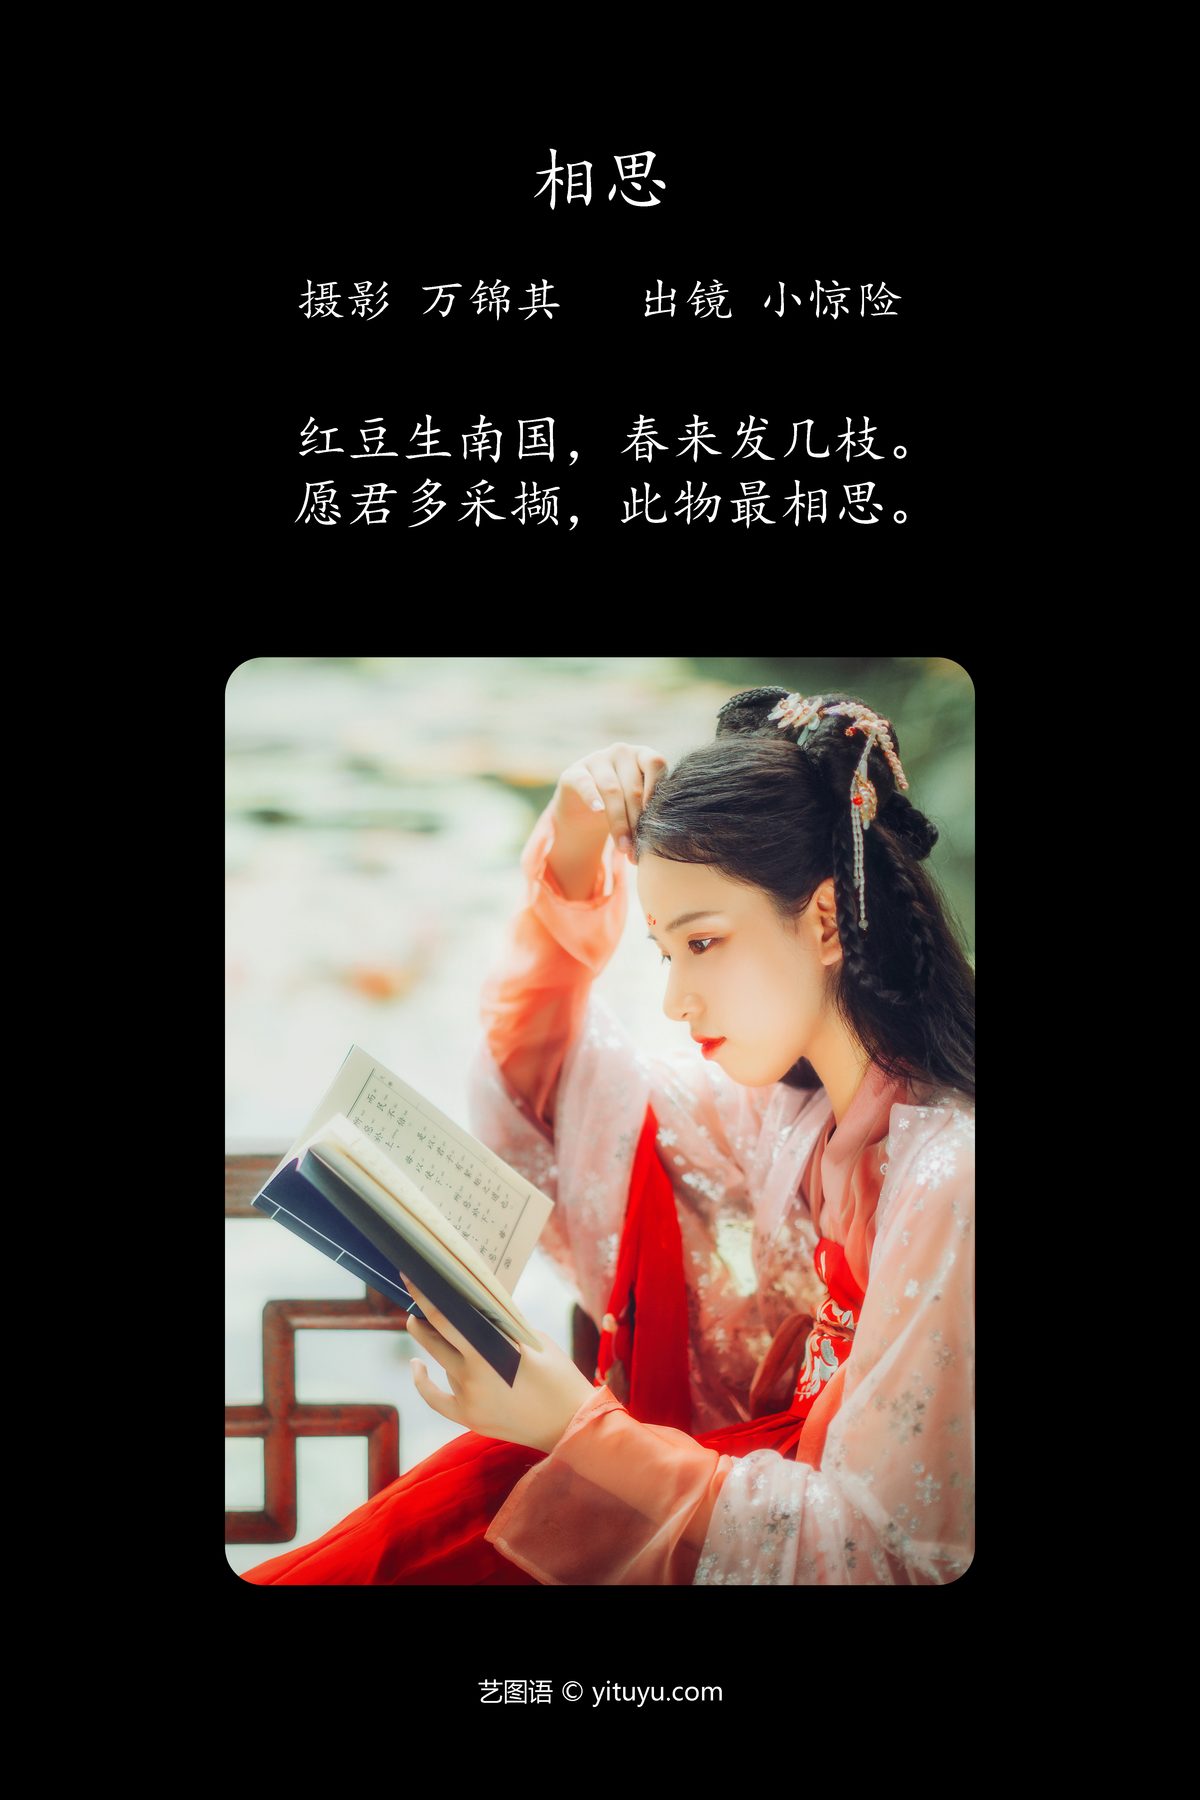 YiTuYu艺图语 Vol 4154 Xiao Jing Xian 0001 7364158261.jpg